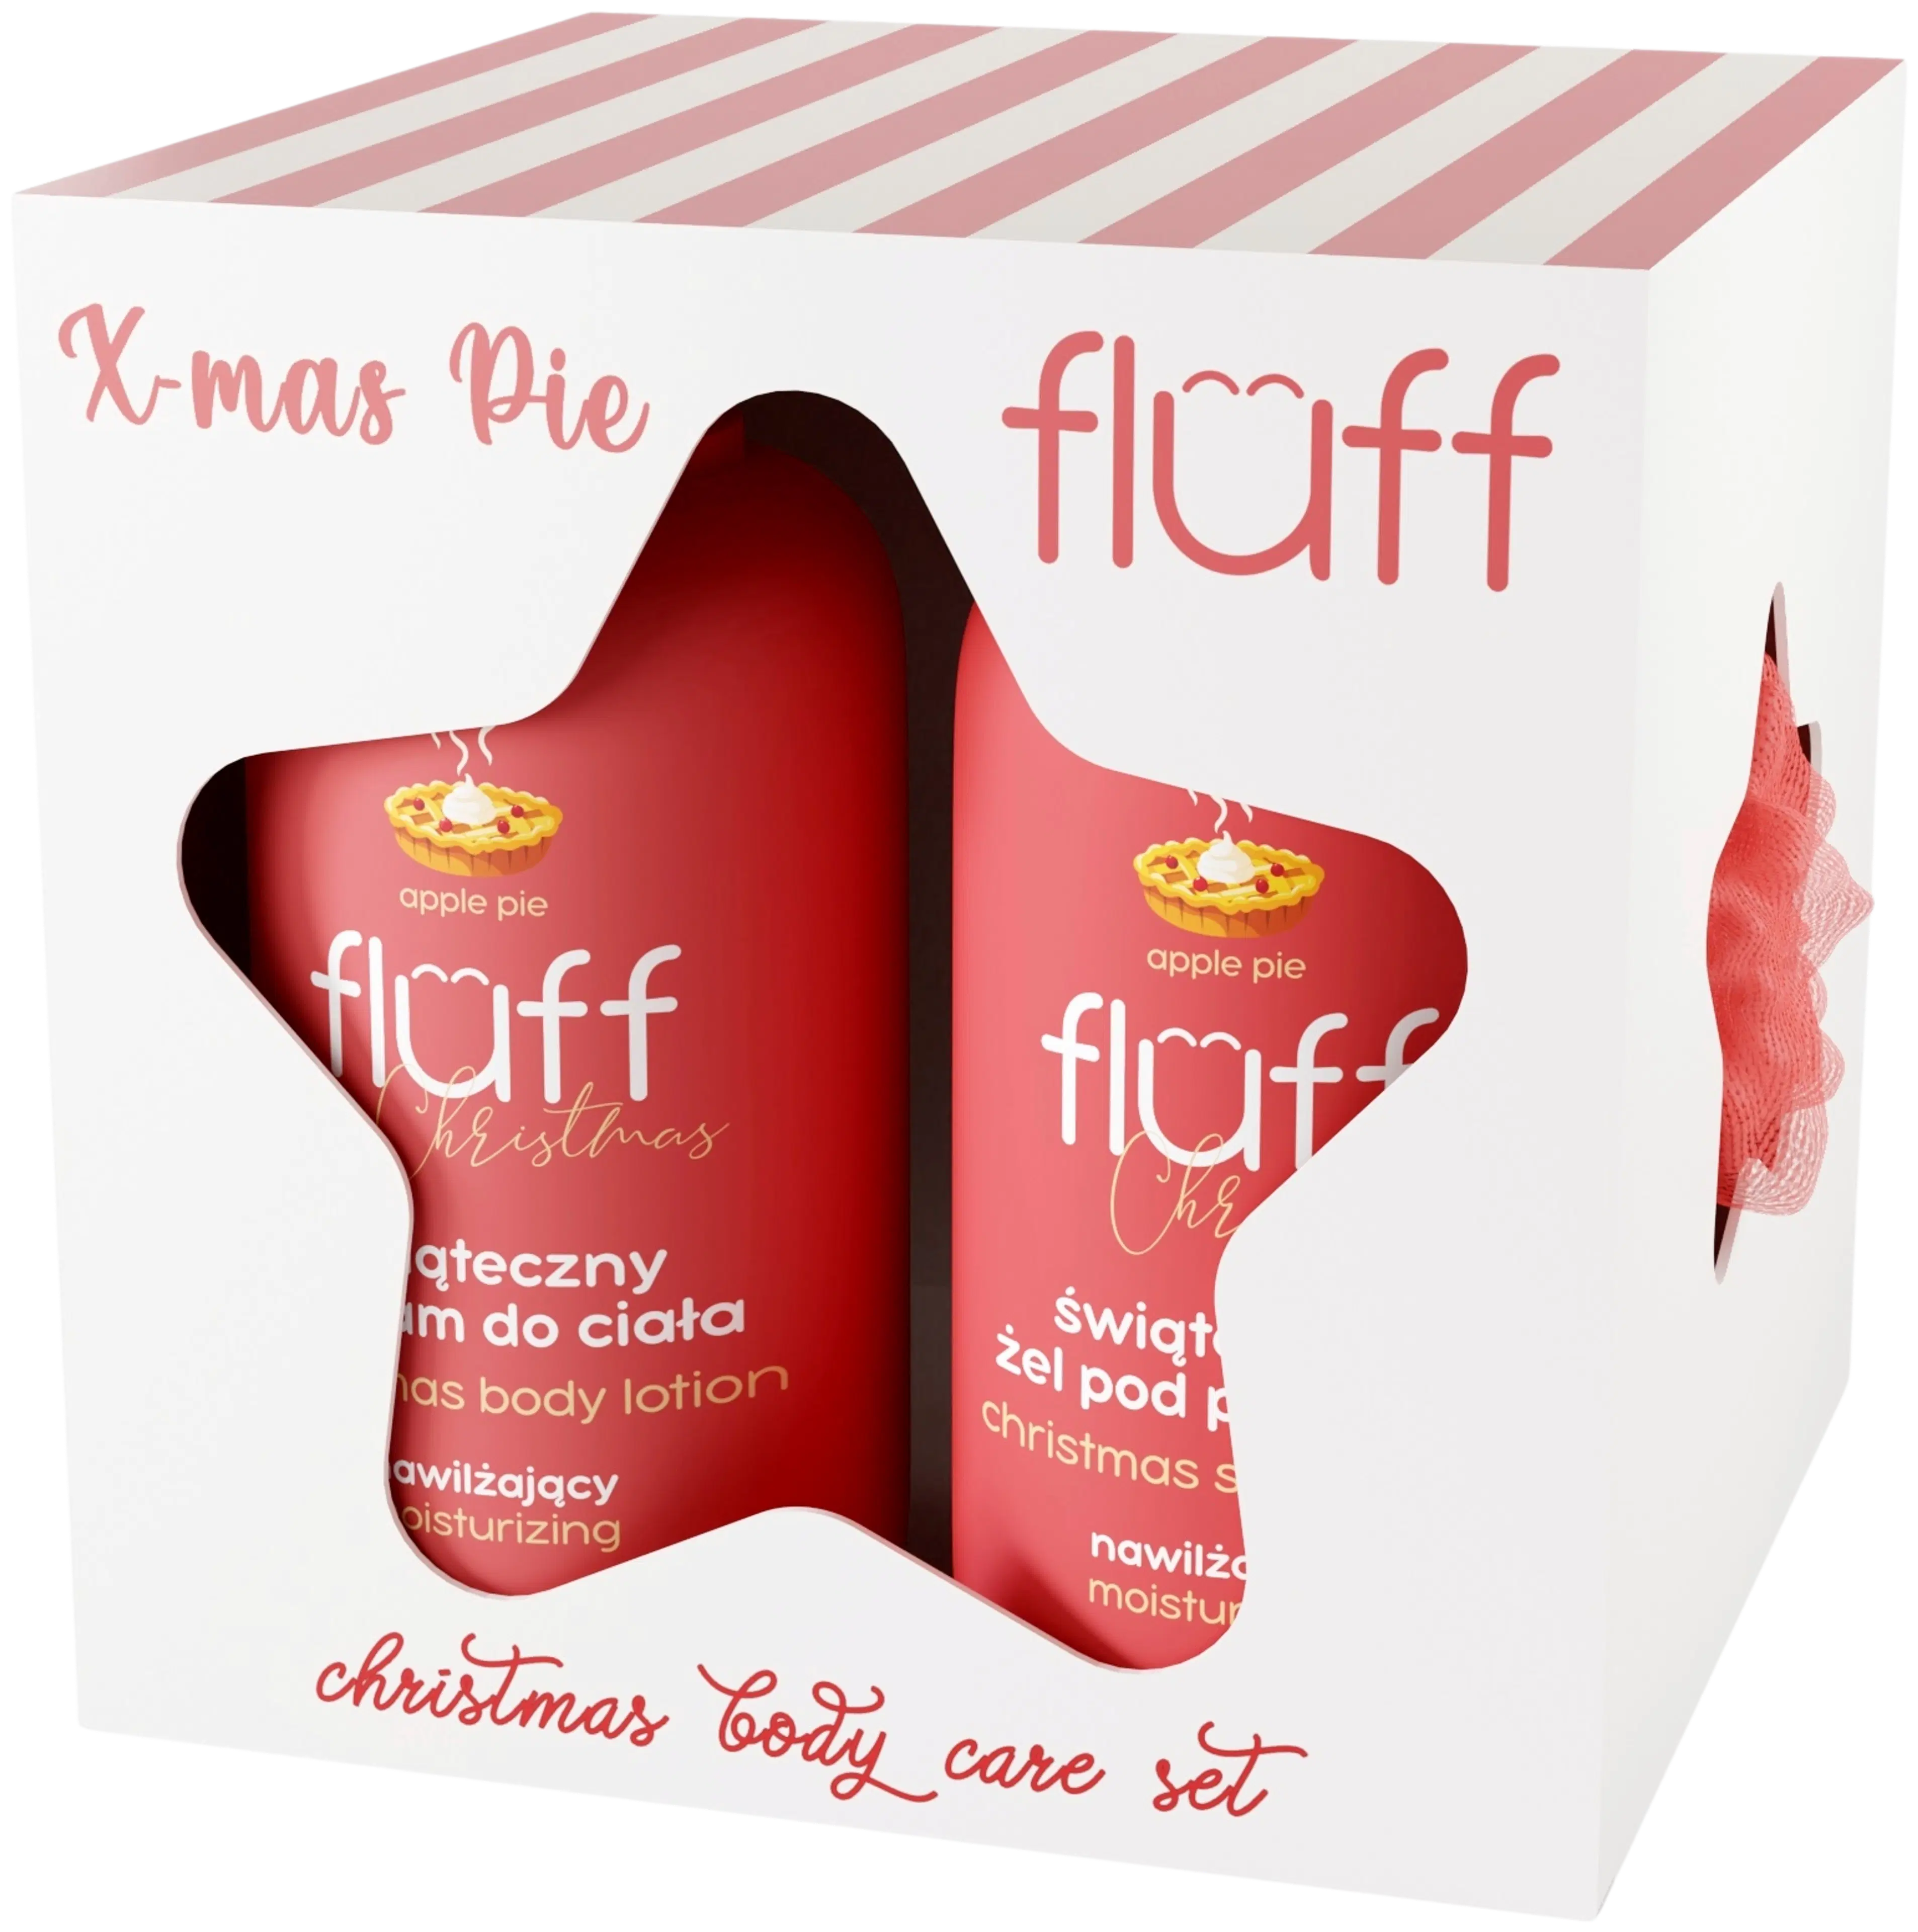 Fluff Christmas Body Care Set - X-mas Apple Pie